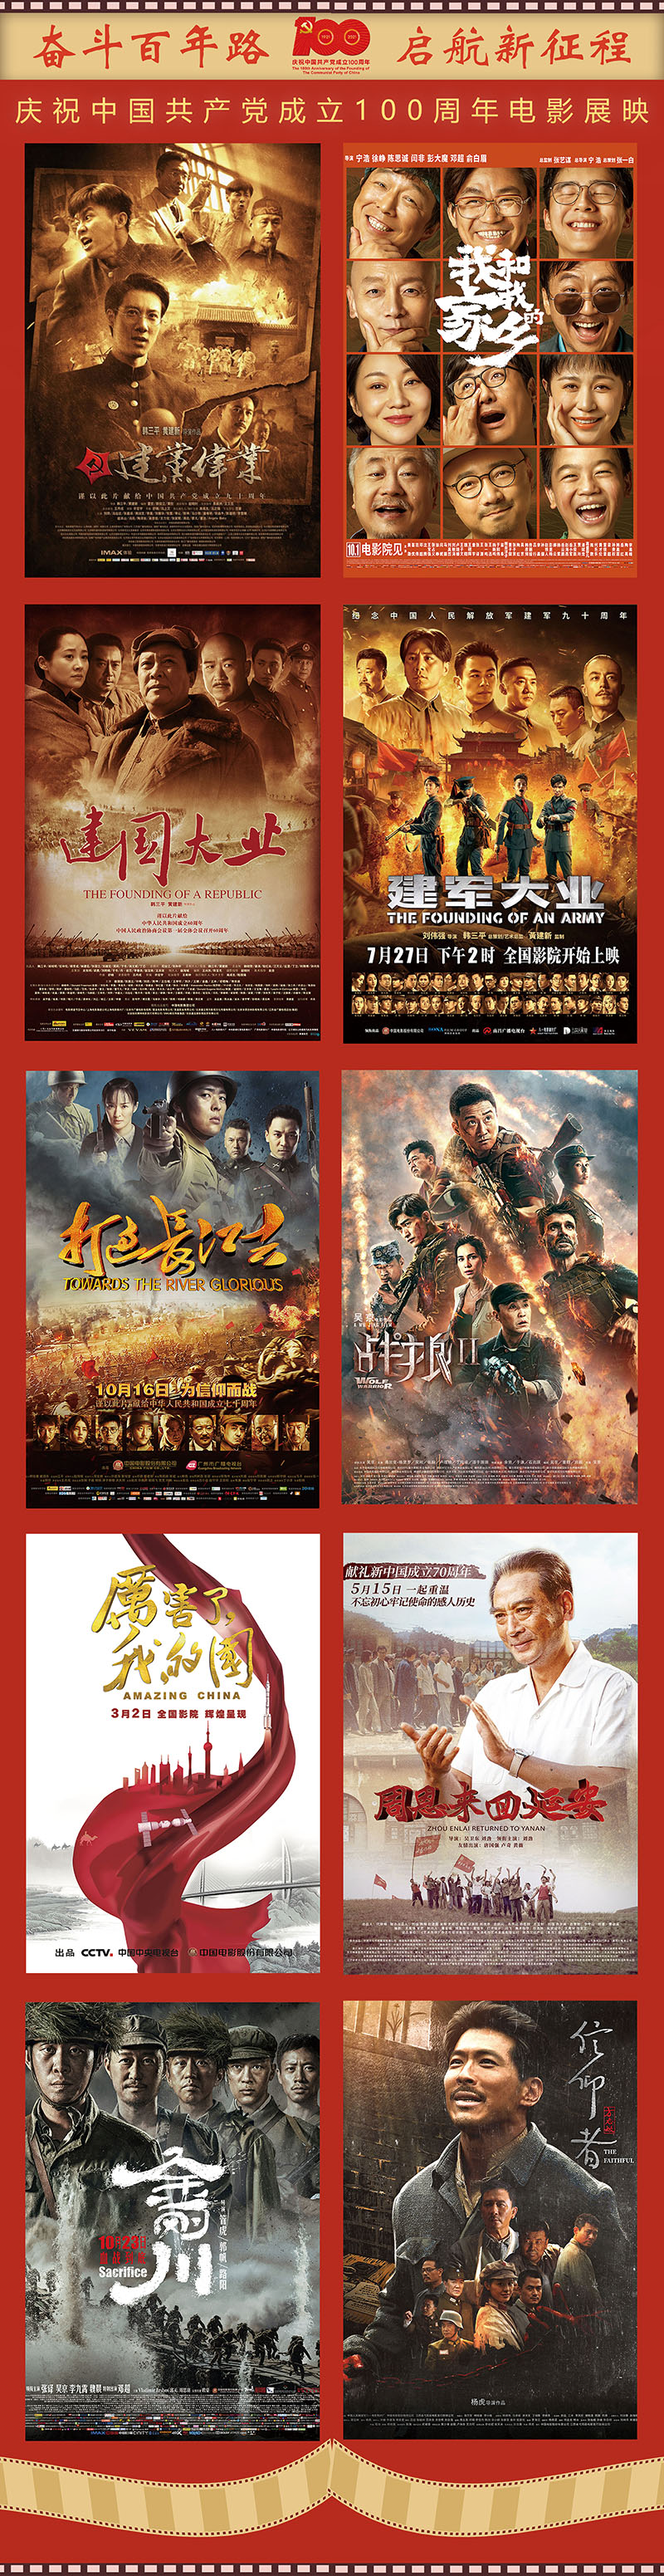 中国共产党成立100周年,电影展映,中国科技馆